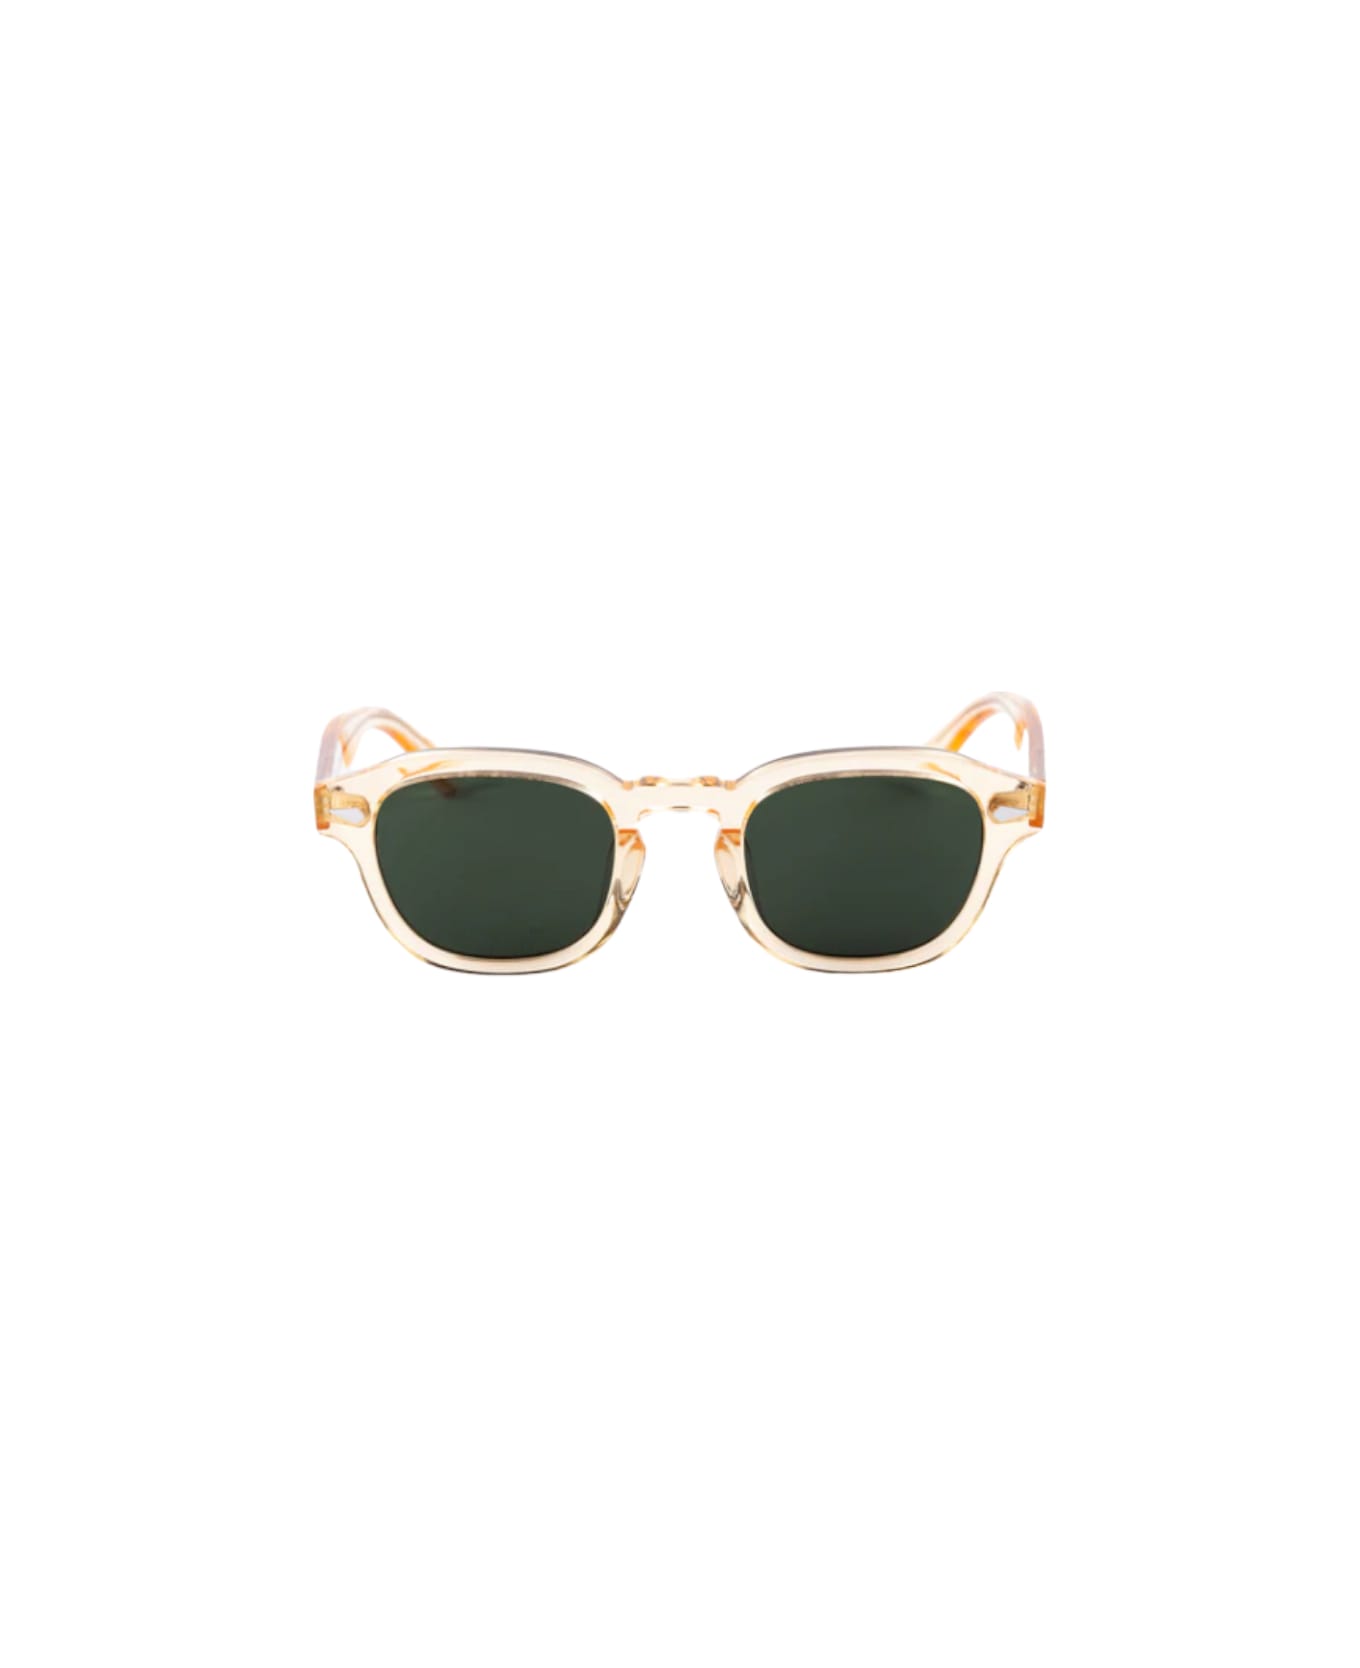 Lesca Posh - Champagne - 186 Sunglasses